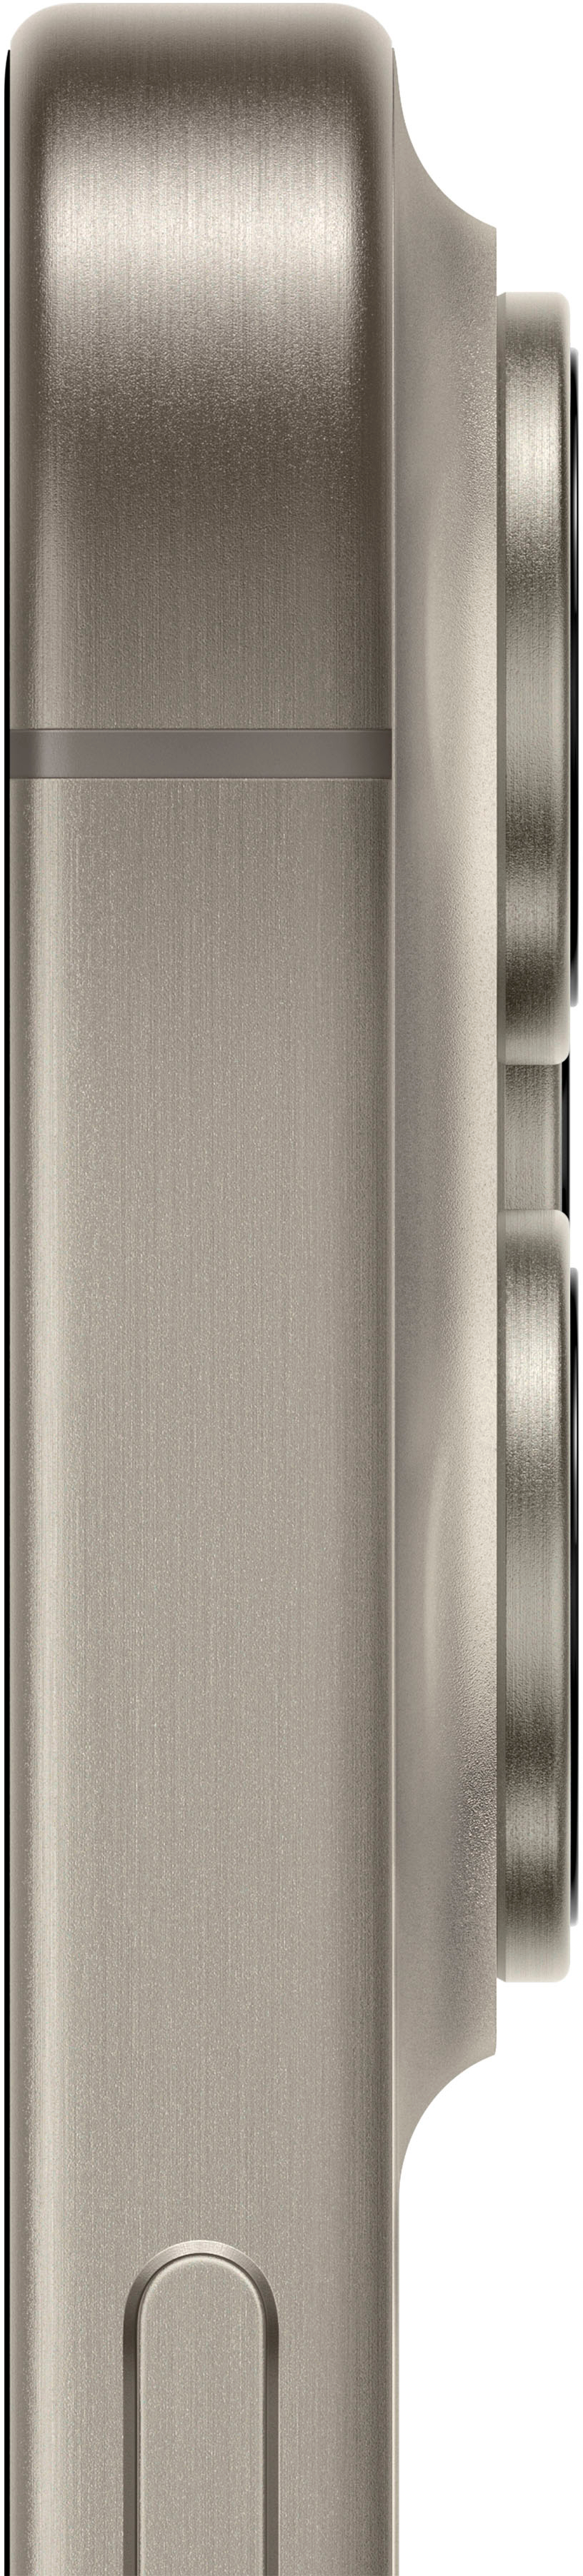 Apple iPhone 15 Pro Max - 512 GB - Blue Titanium (Verizon) for sale online